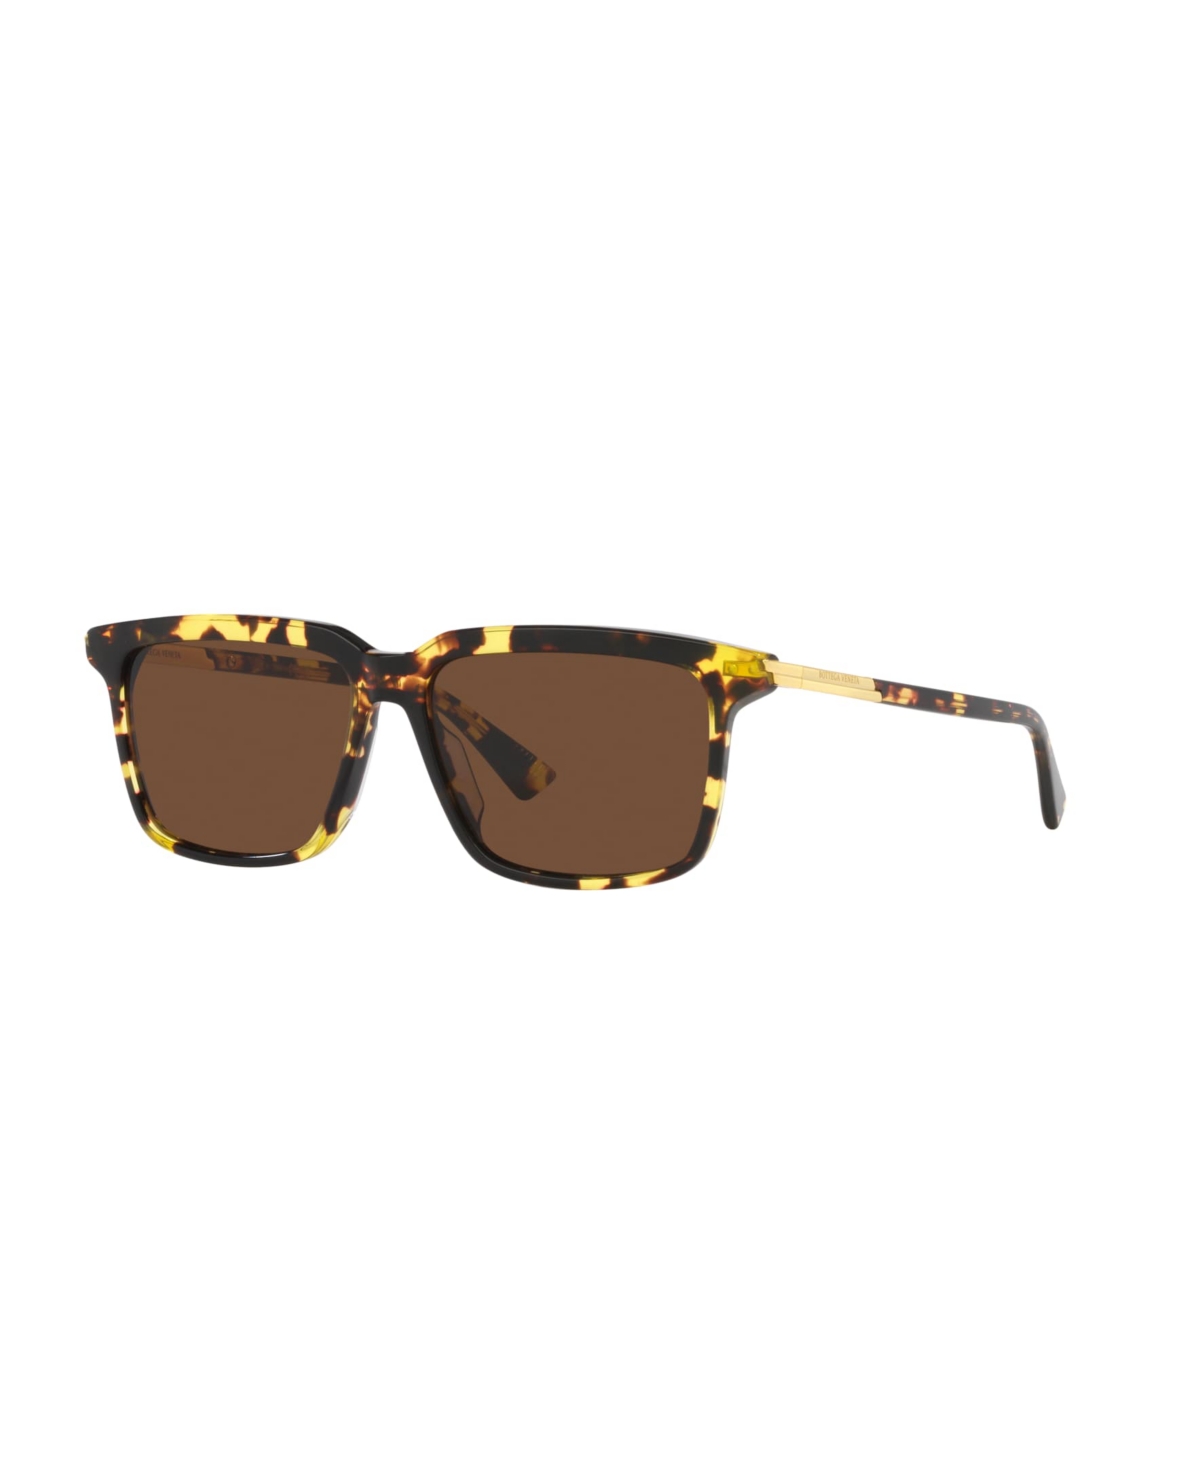 Men's Sunglasses, Bv1261S 6J000420 - Tortoise